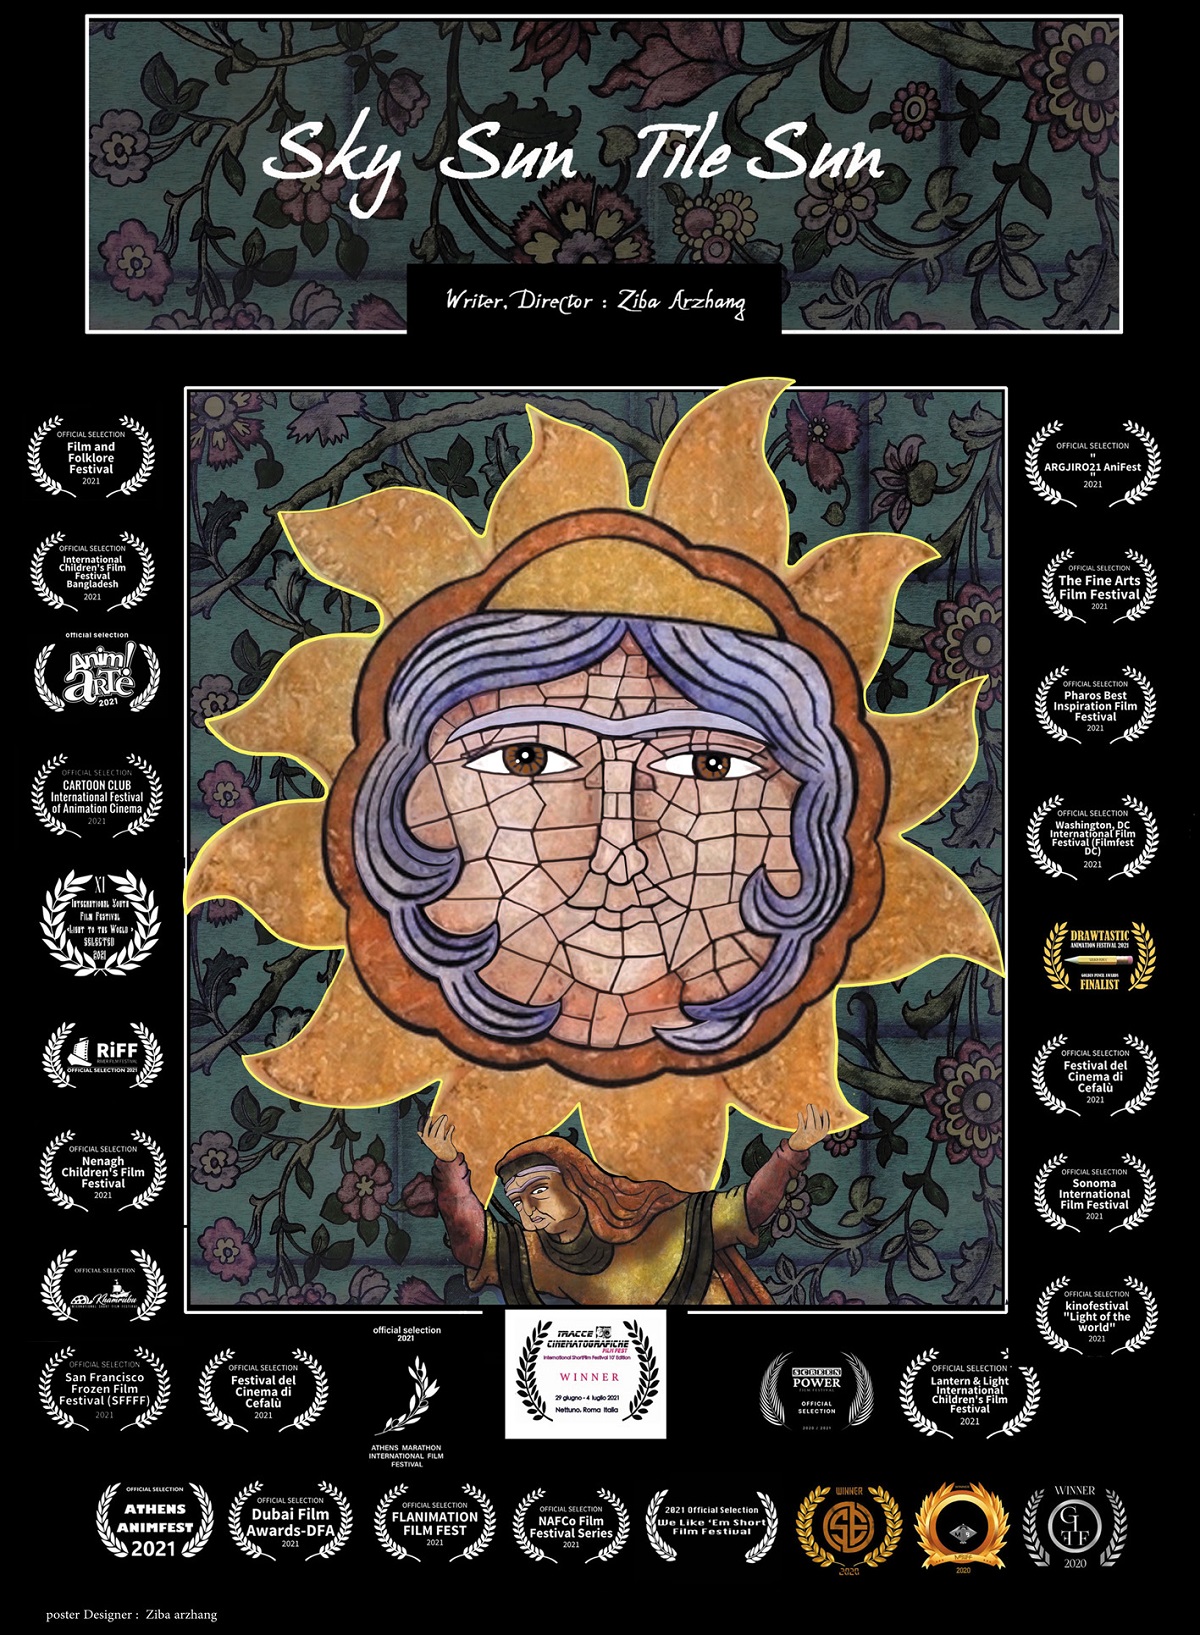 انیمیشن خورشید آسمان ، خورشید کاشی منتخب چهار جشنواره جهانی فیلم شد - خبریفا